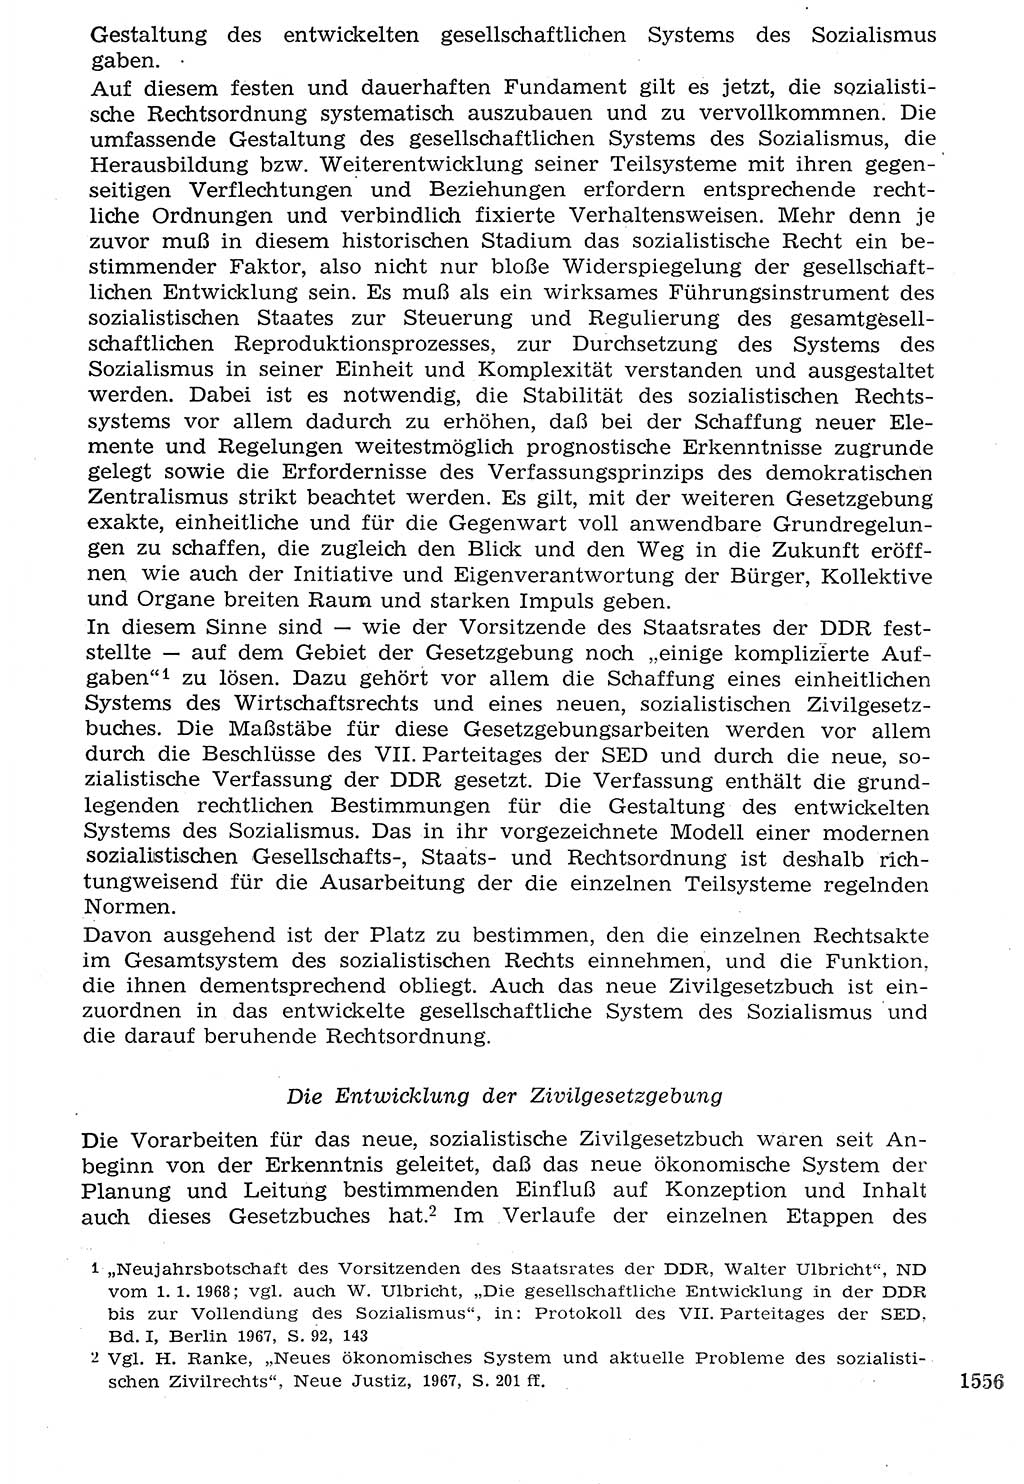 Staat und Recht (StuR), 17. Jahrgang [Deutsche Demokratische Republik (DDR)] 1968, Seite 1556 (StuR DDR 1968, S. 1556)